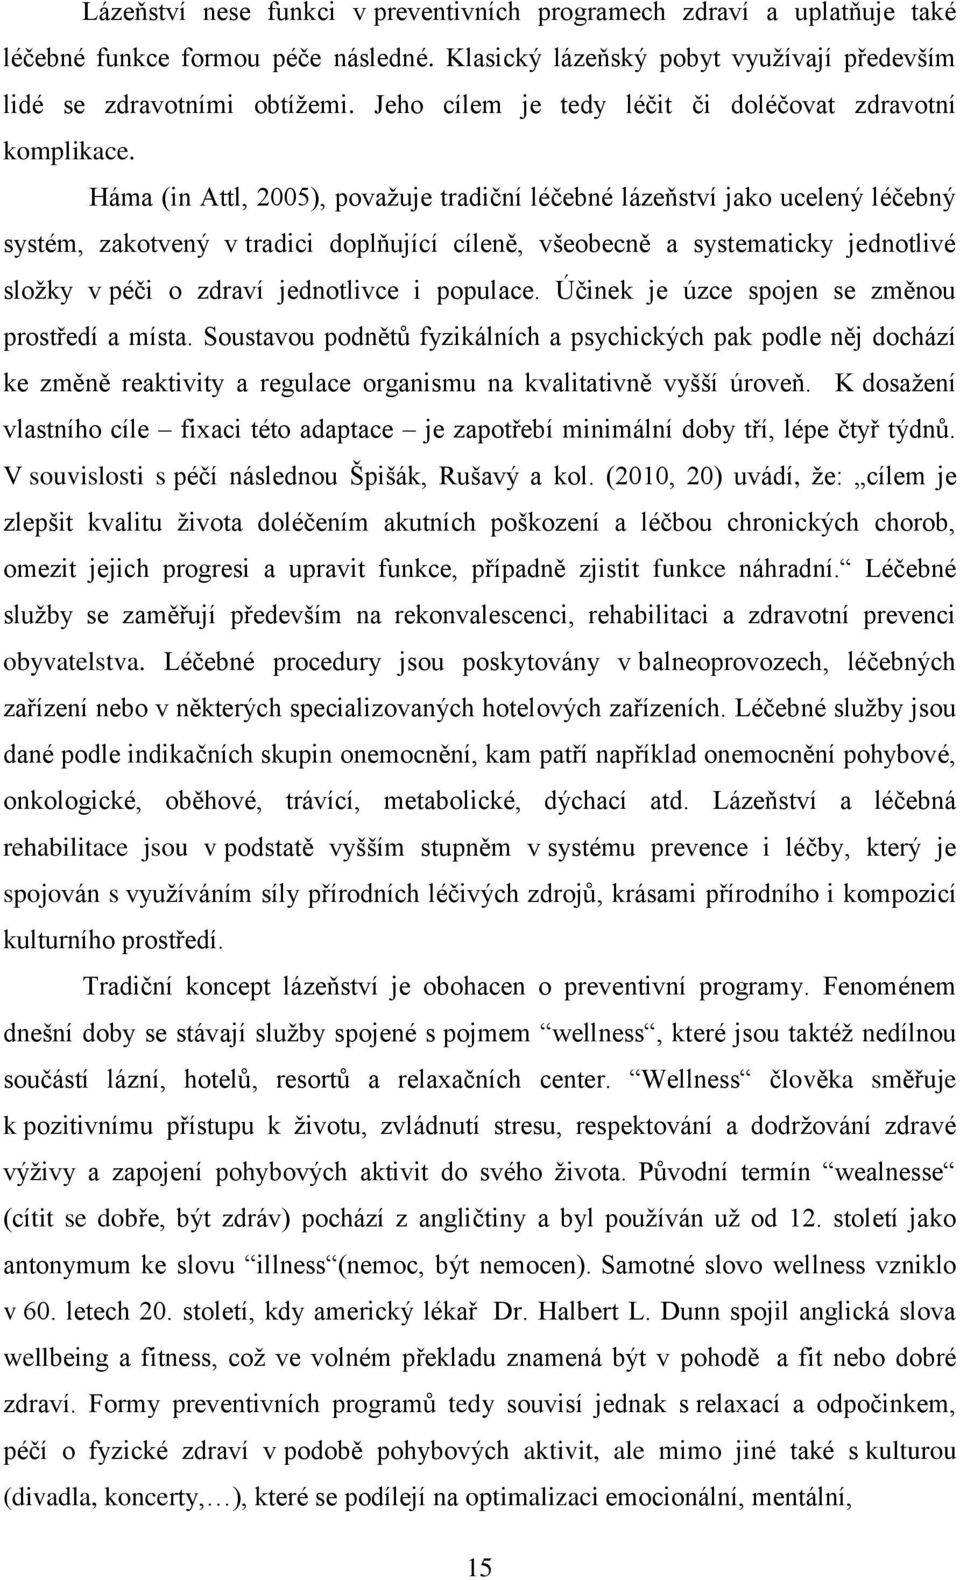 Háma (in Attl, 2005), považuje tradiční léčebné lázeňství jako ucelený léčebný systém, zakotvený v tradici doplňující cíleně, všeobecně a systematicky jednotlivé složky v péči o zdraví jednotlivce i